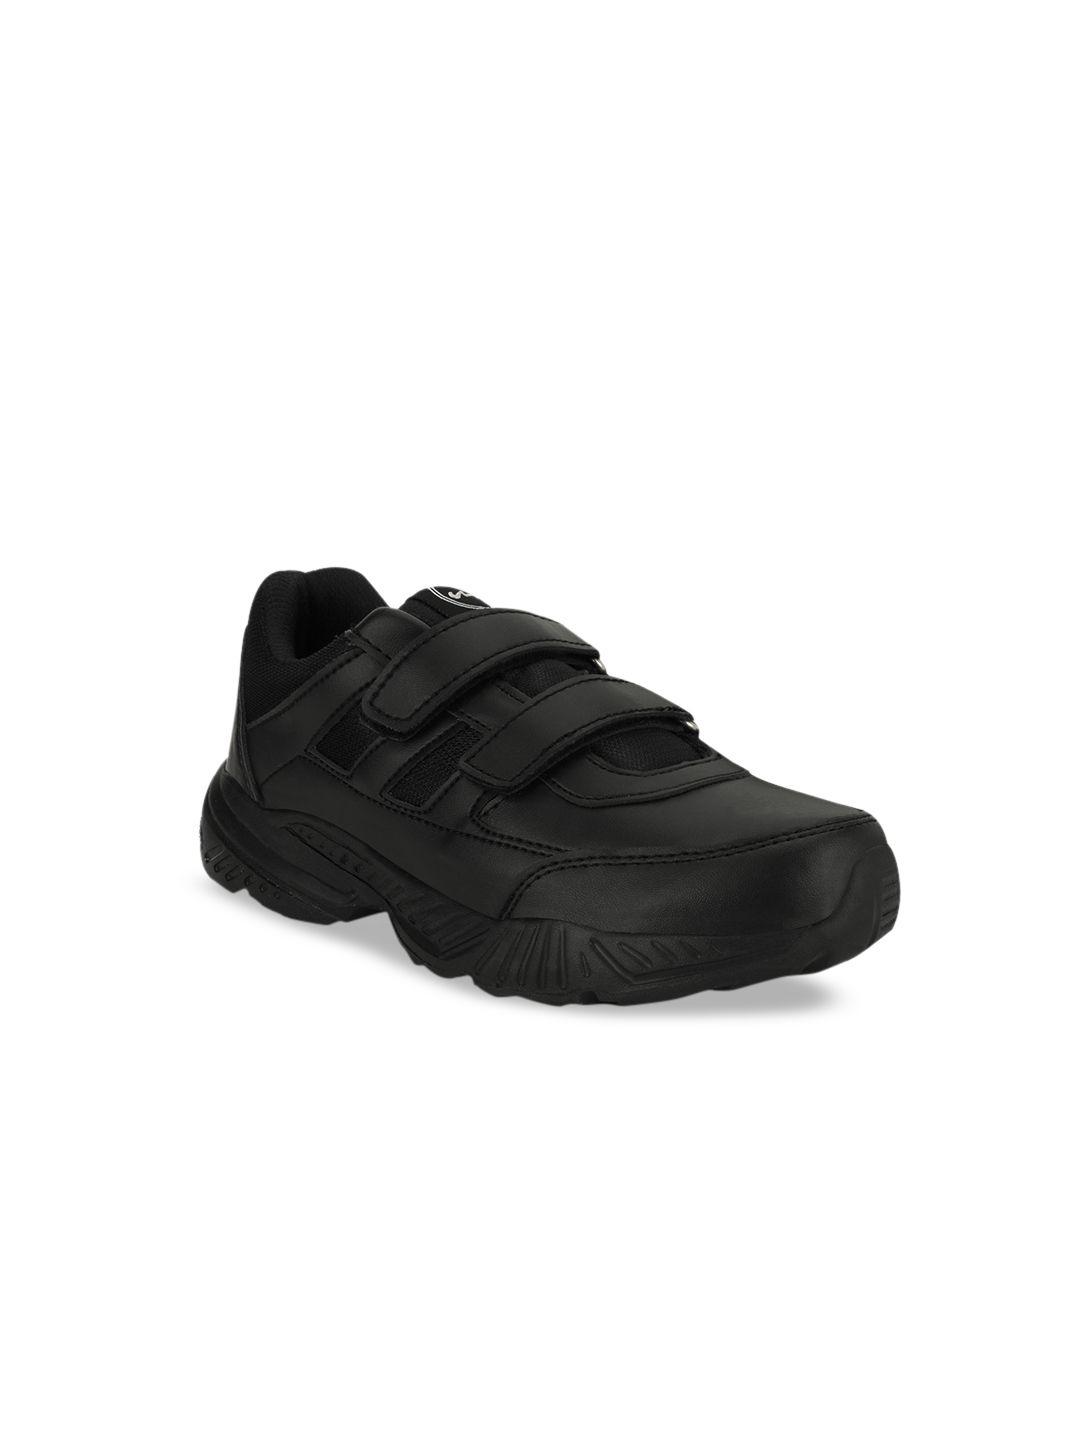 campus-boys-black-slip-on-sneakers